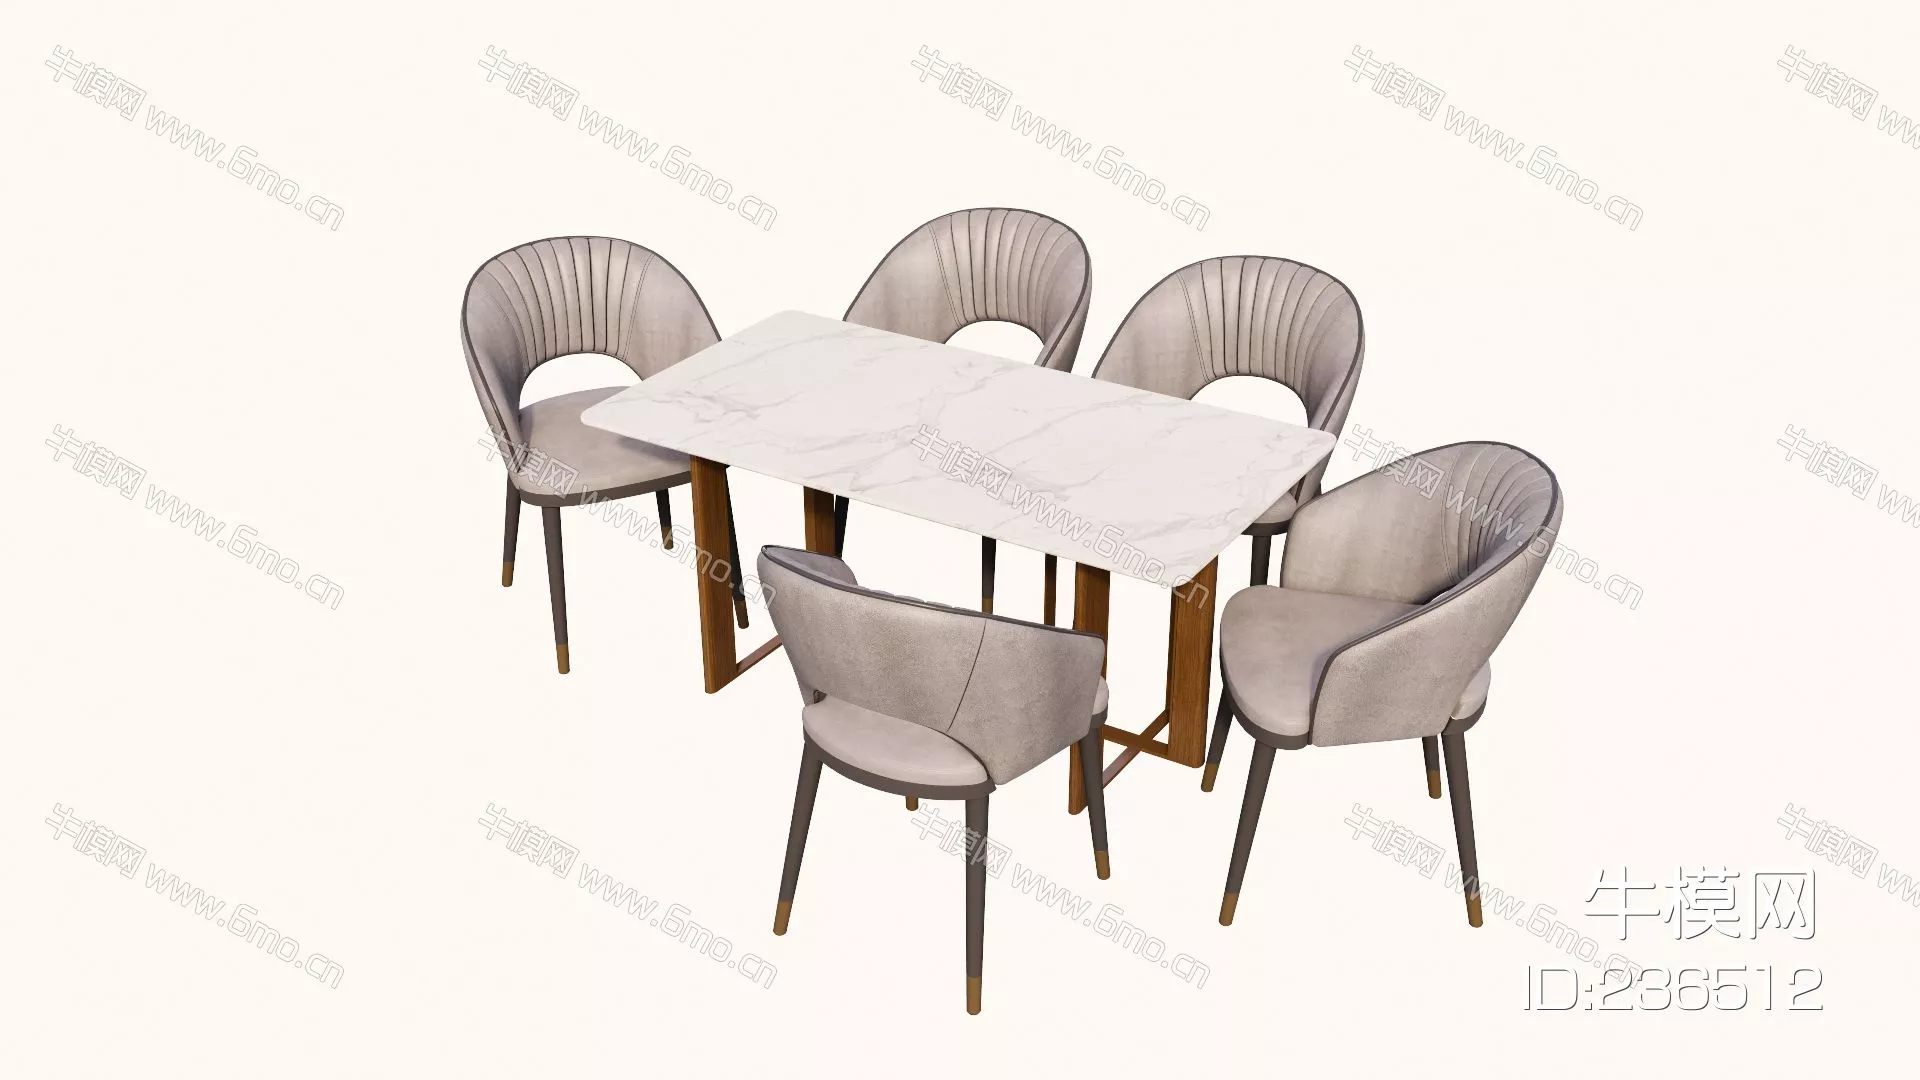 MODERN DINING TABLE SET - SKETCHUP 3D MODEL - ENSCAPE - 236512